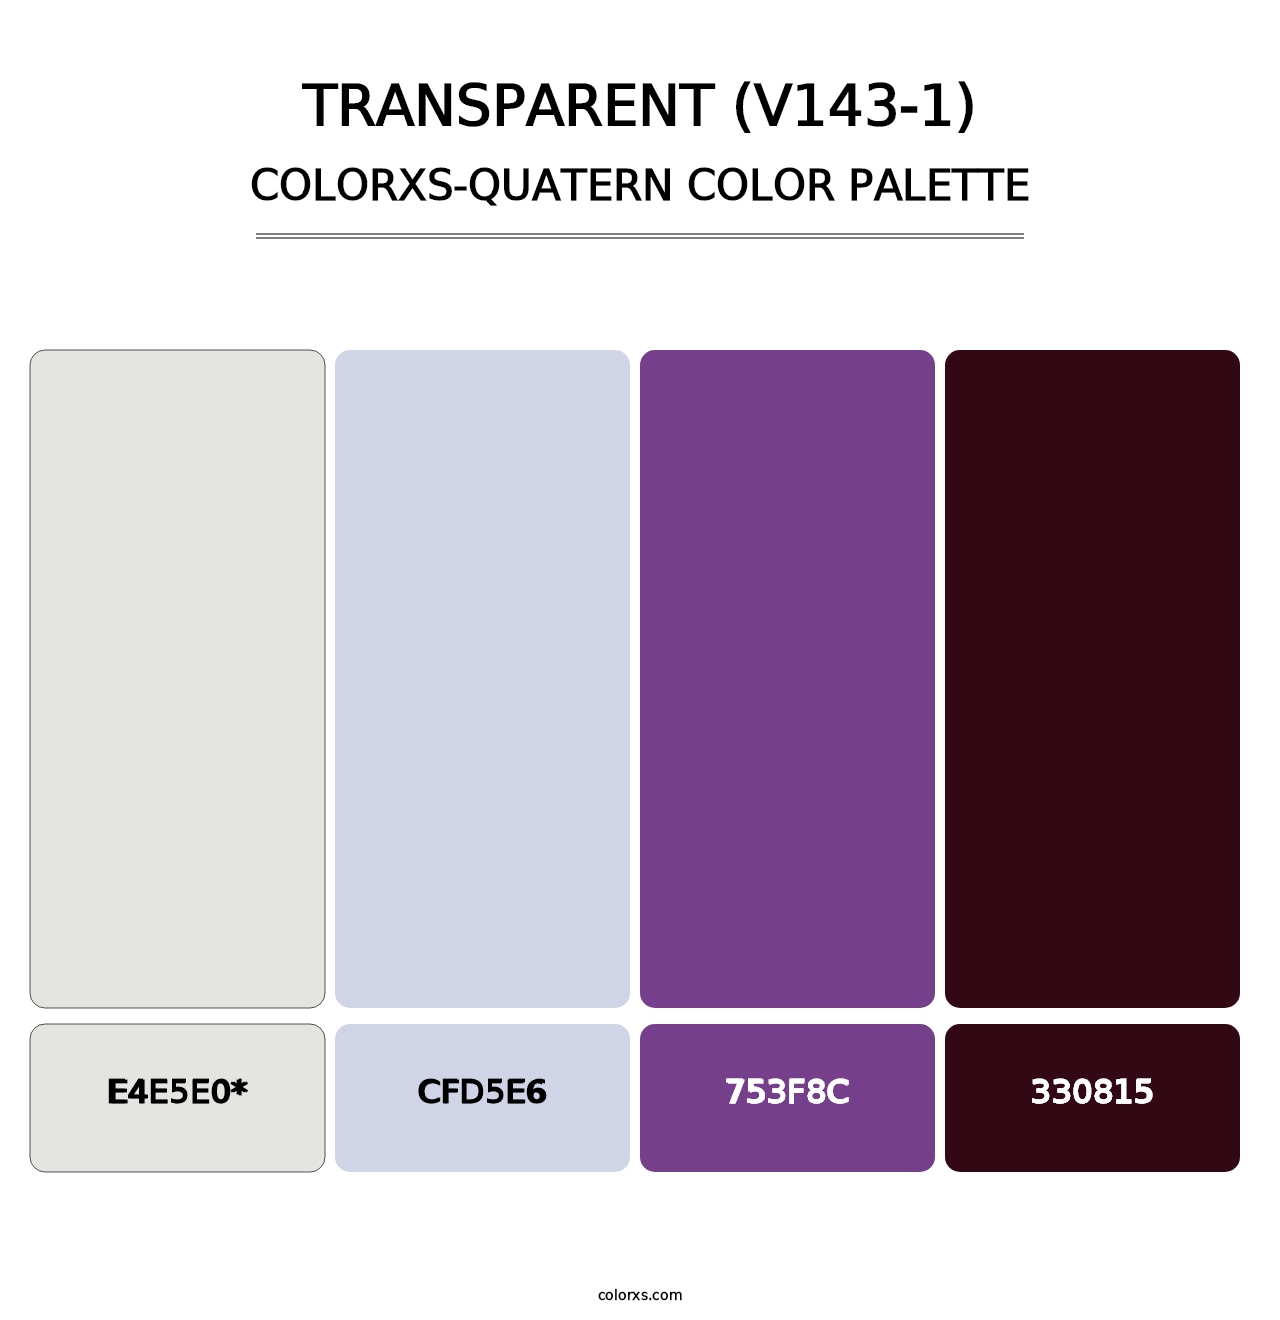 Transparent (V143-1) - Colorxs Quatern Palette